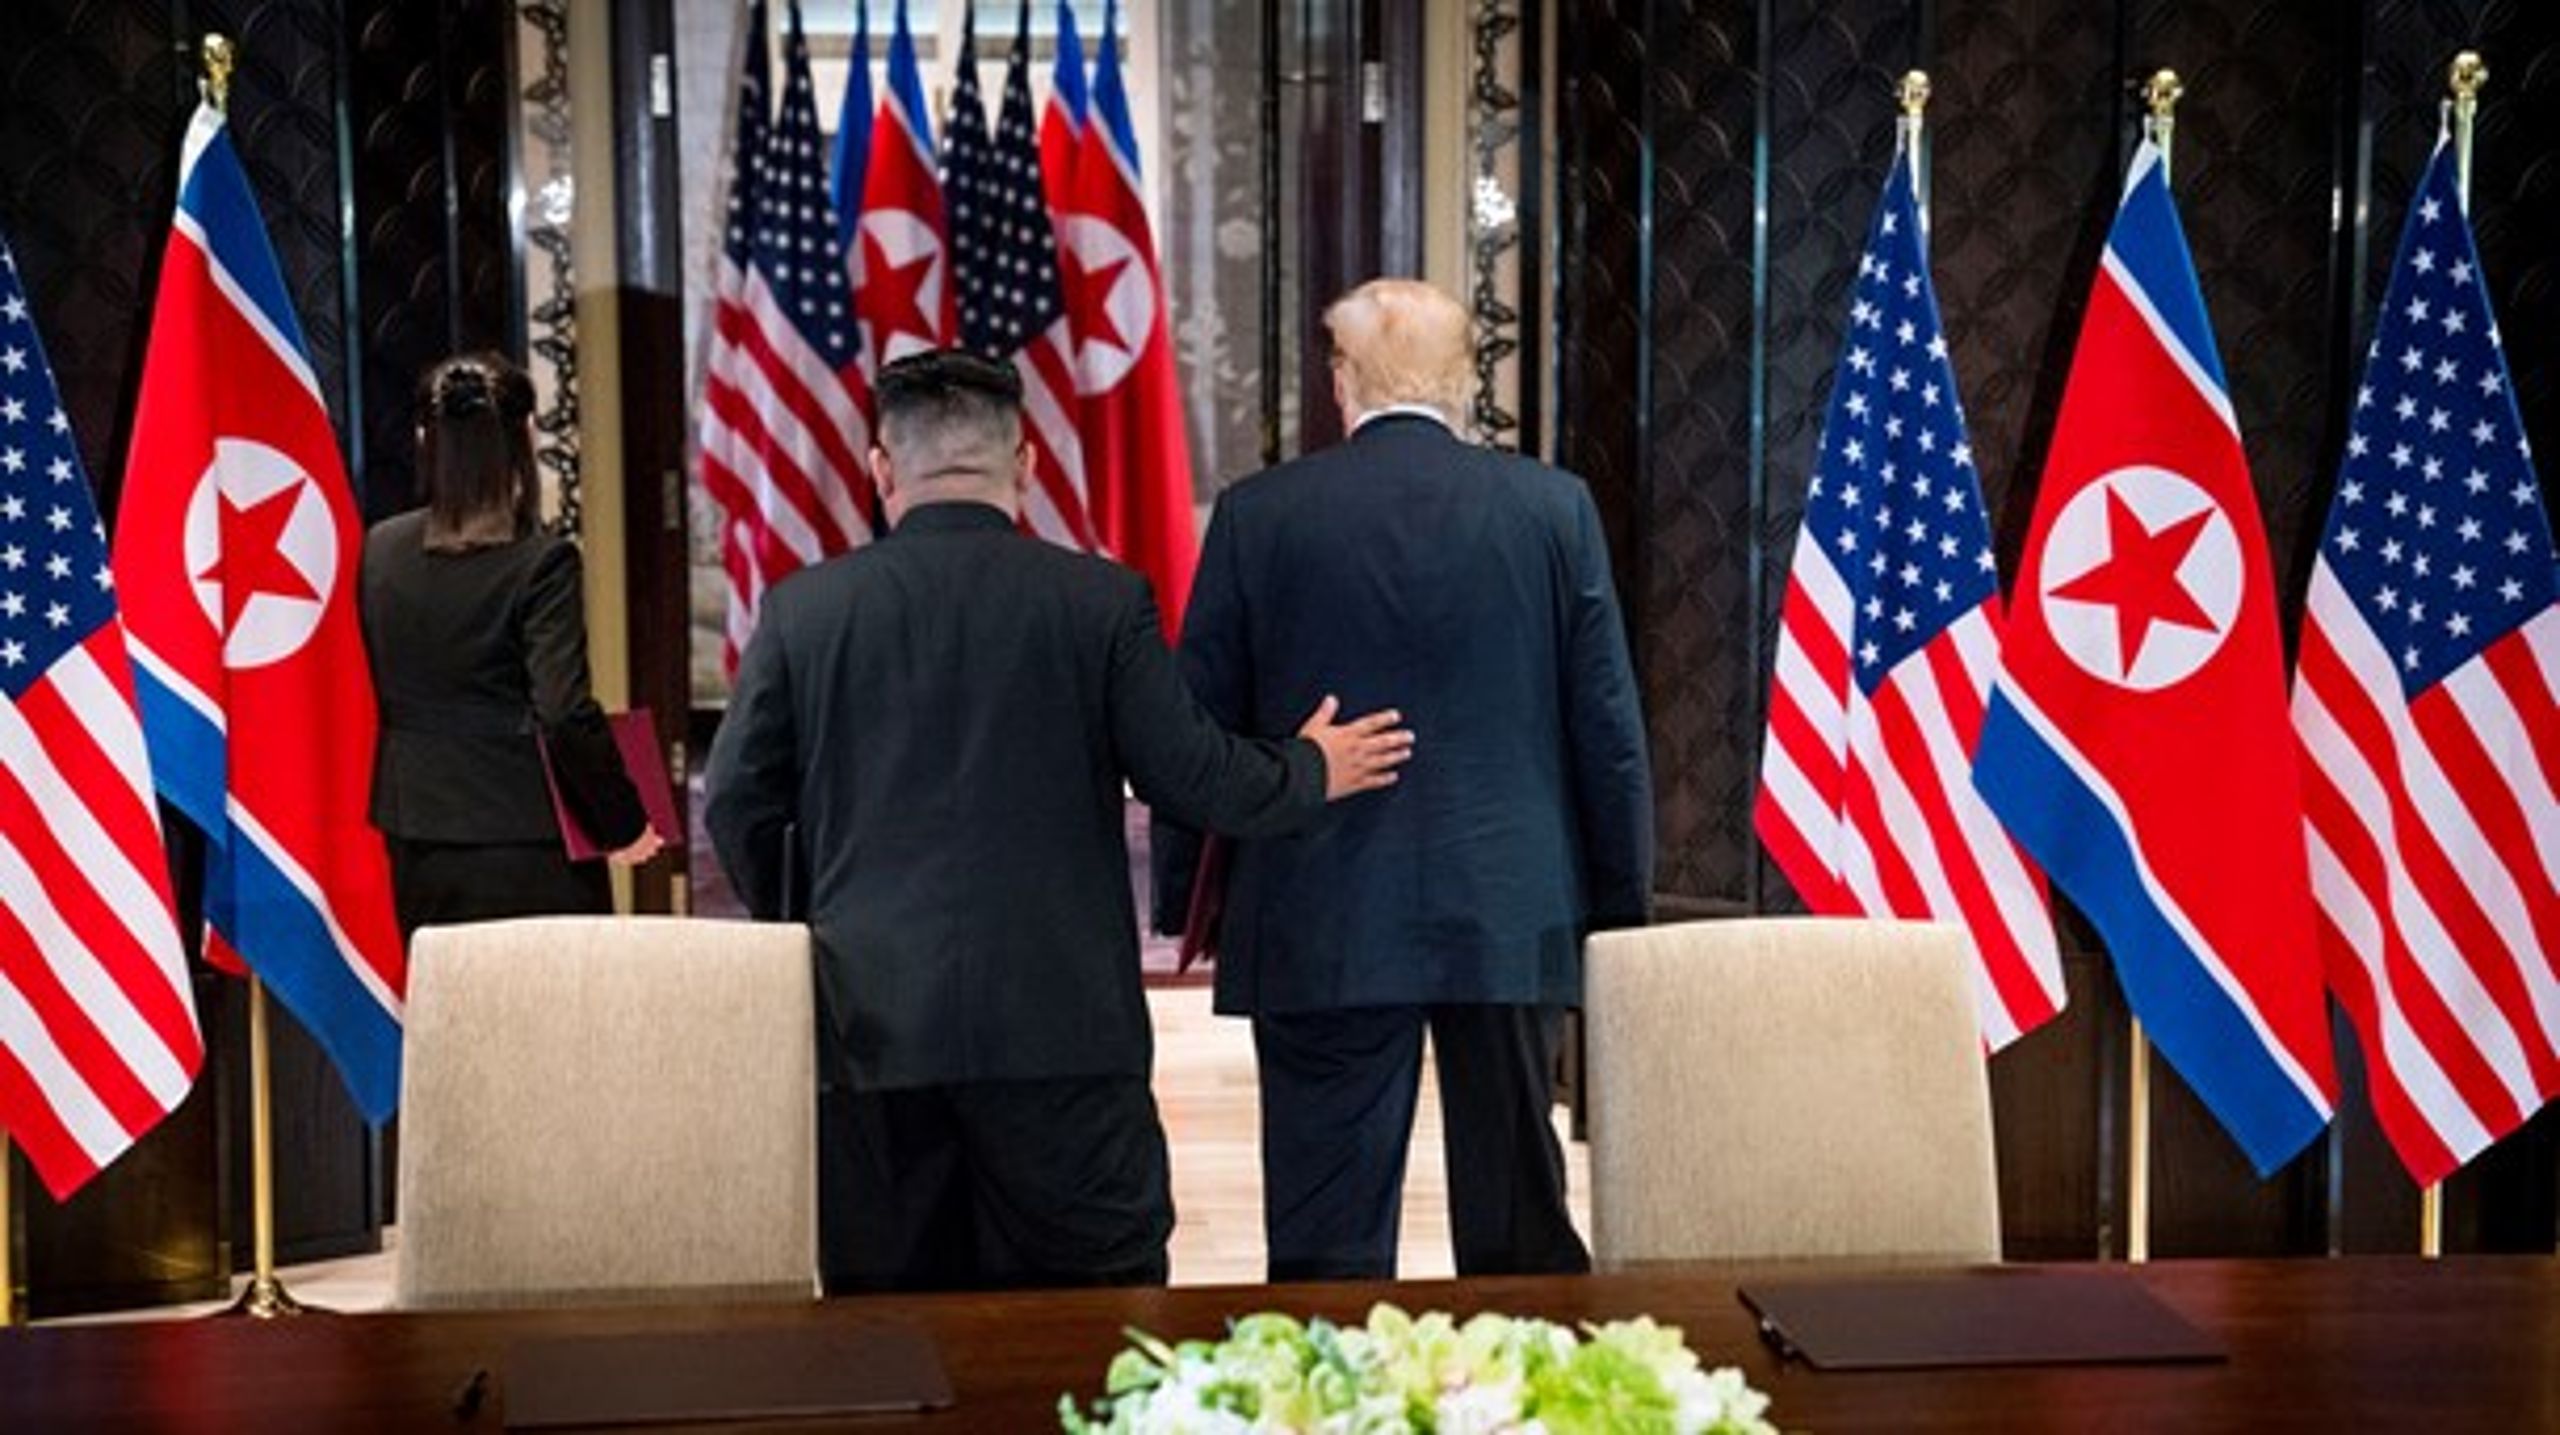 Året, der gik, bød blandt andet på et historisk møde i juni mellem Donald Trump og Kim Jung-un i Singapore.